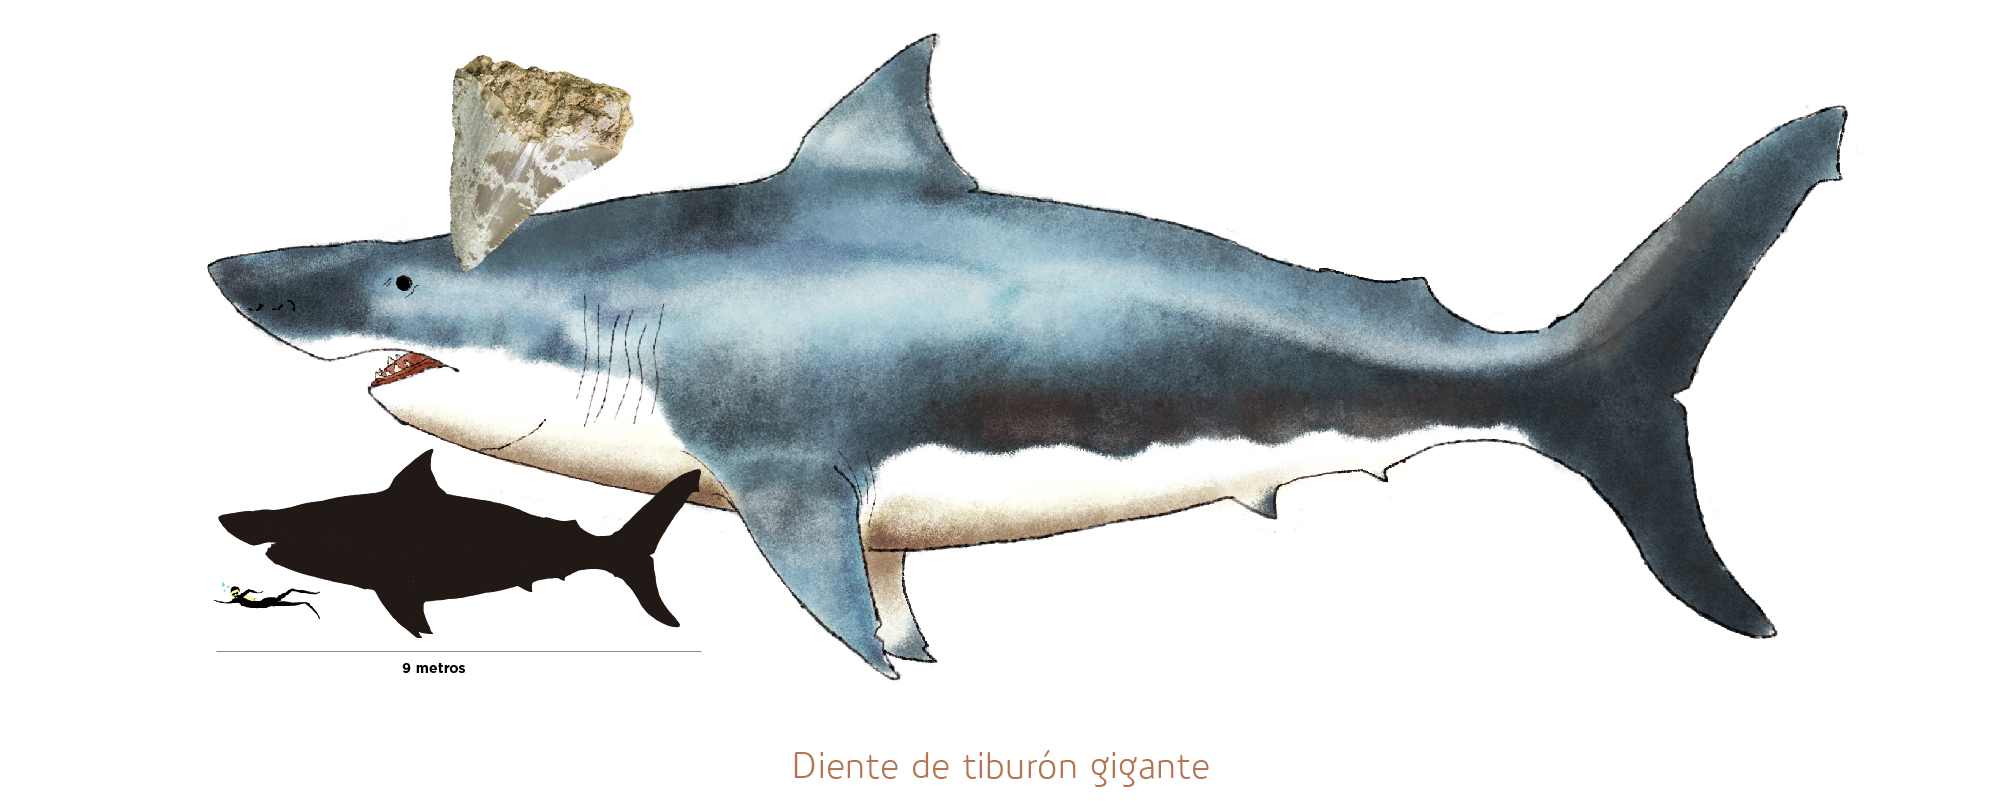 Diente de tiburón gigante